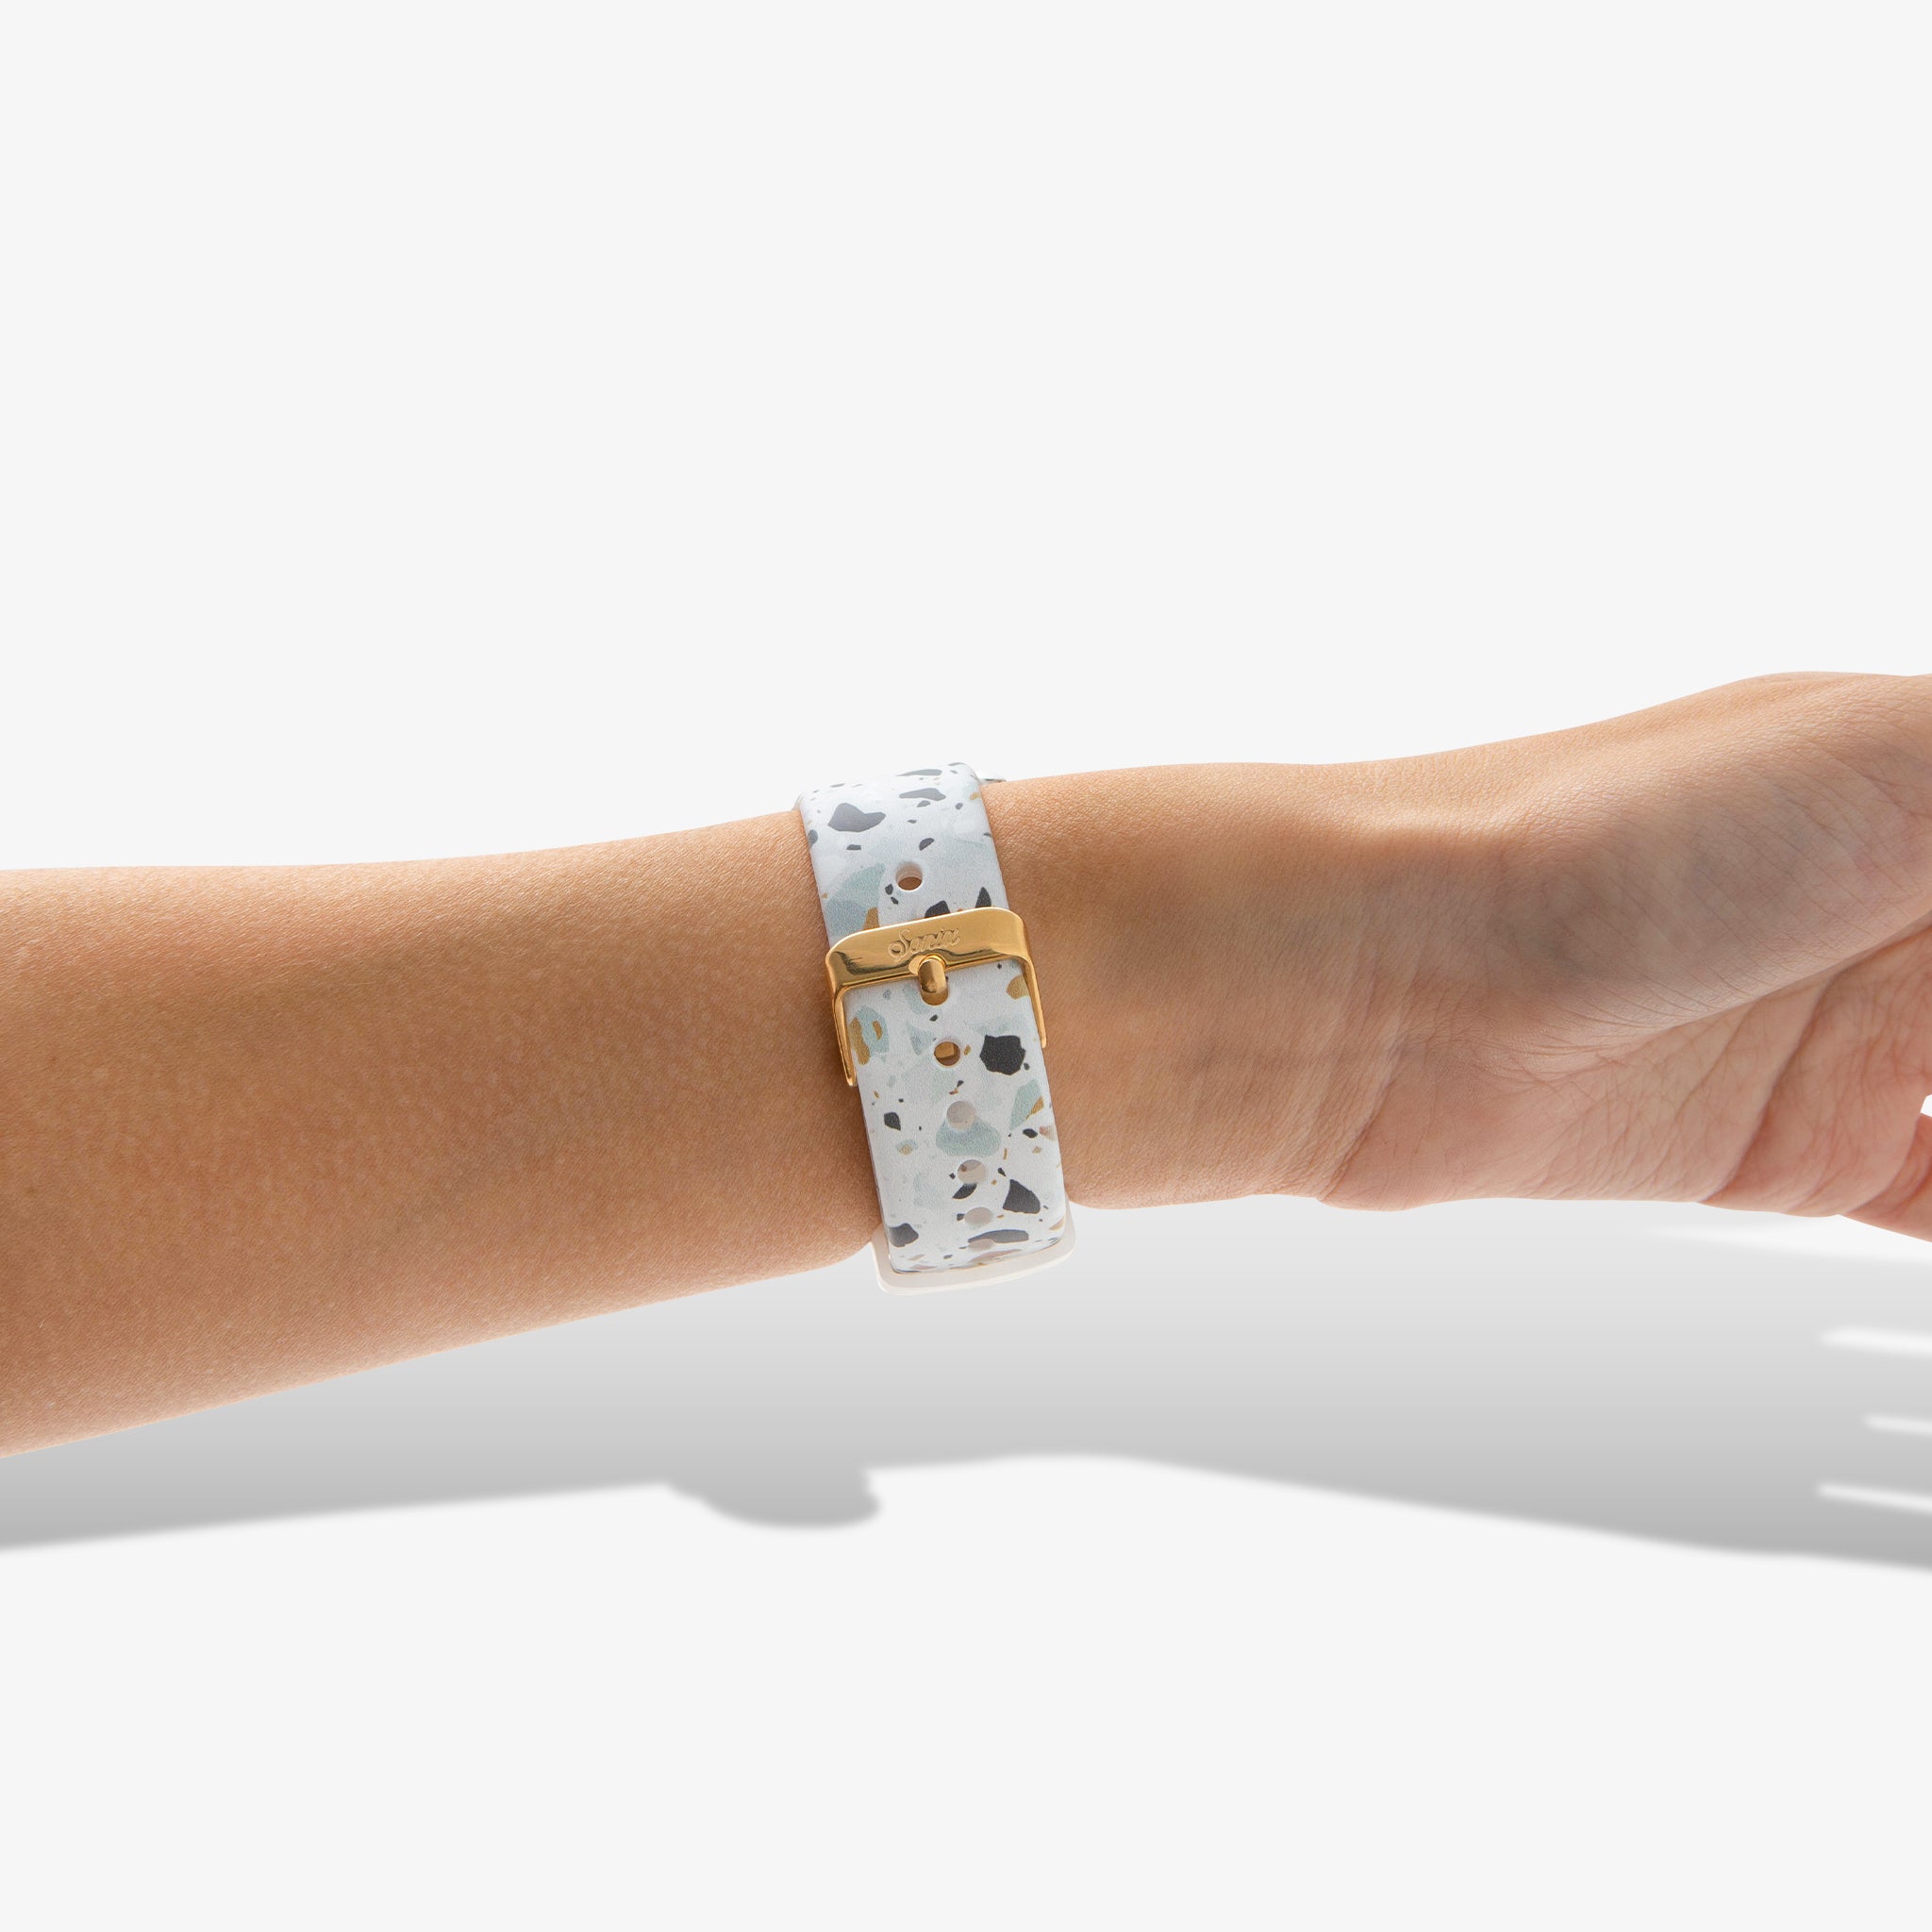 Silicone Apple Watch Band - Confetti